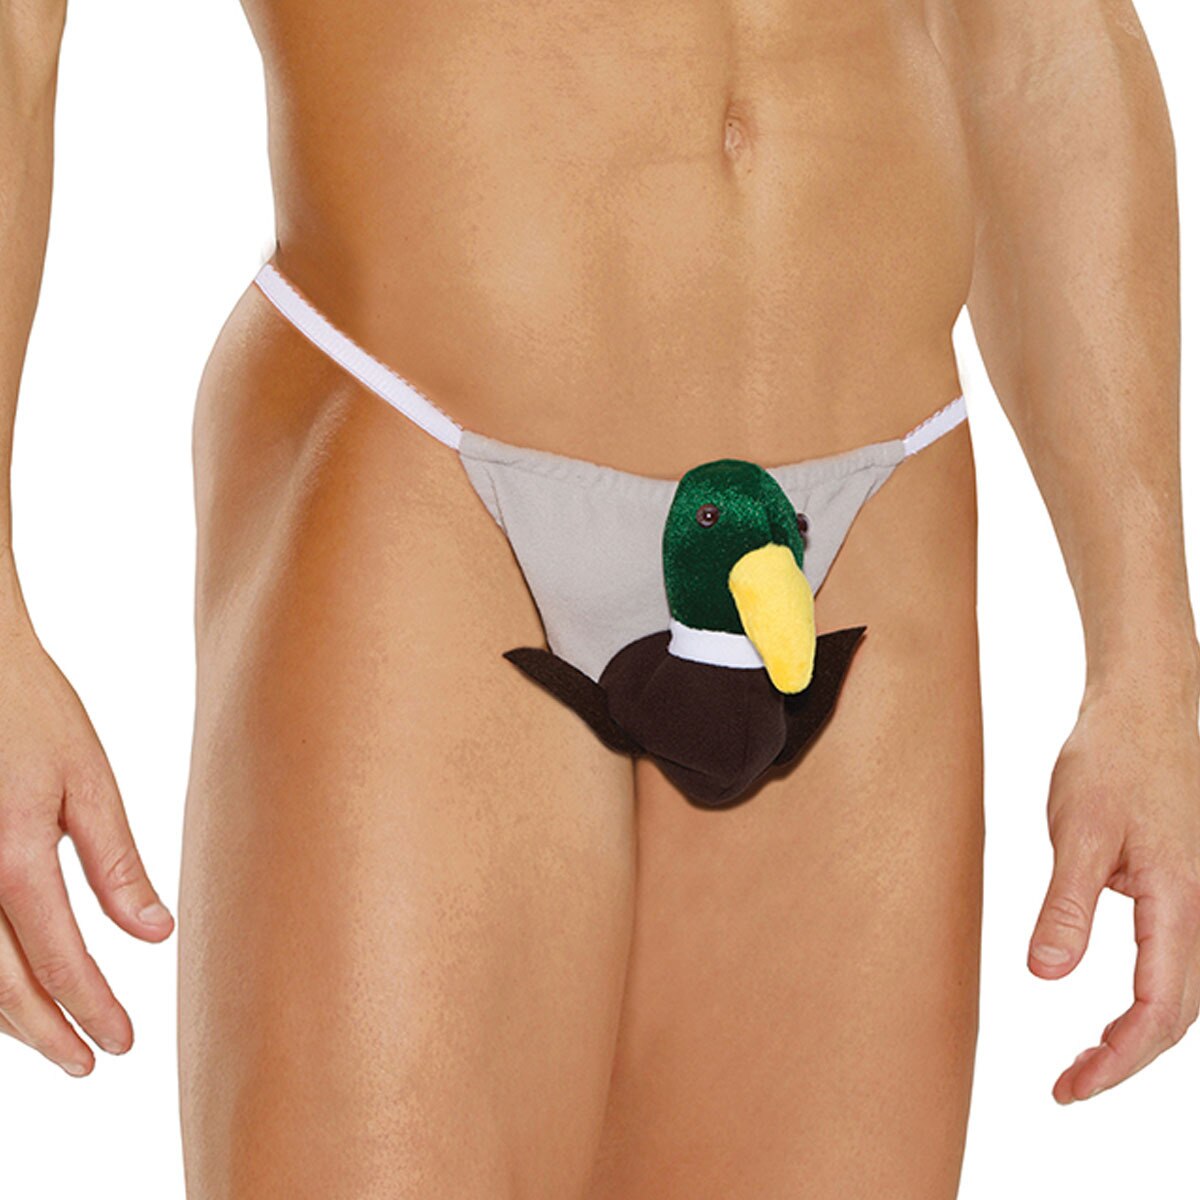 Mens Duck Pouch G string Novelty Underwear